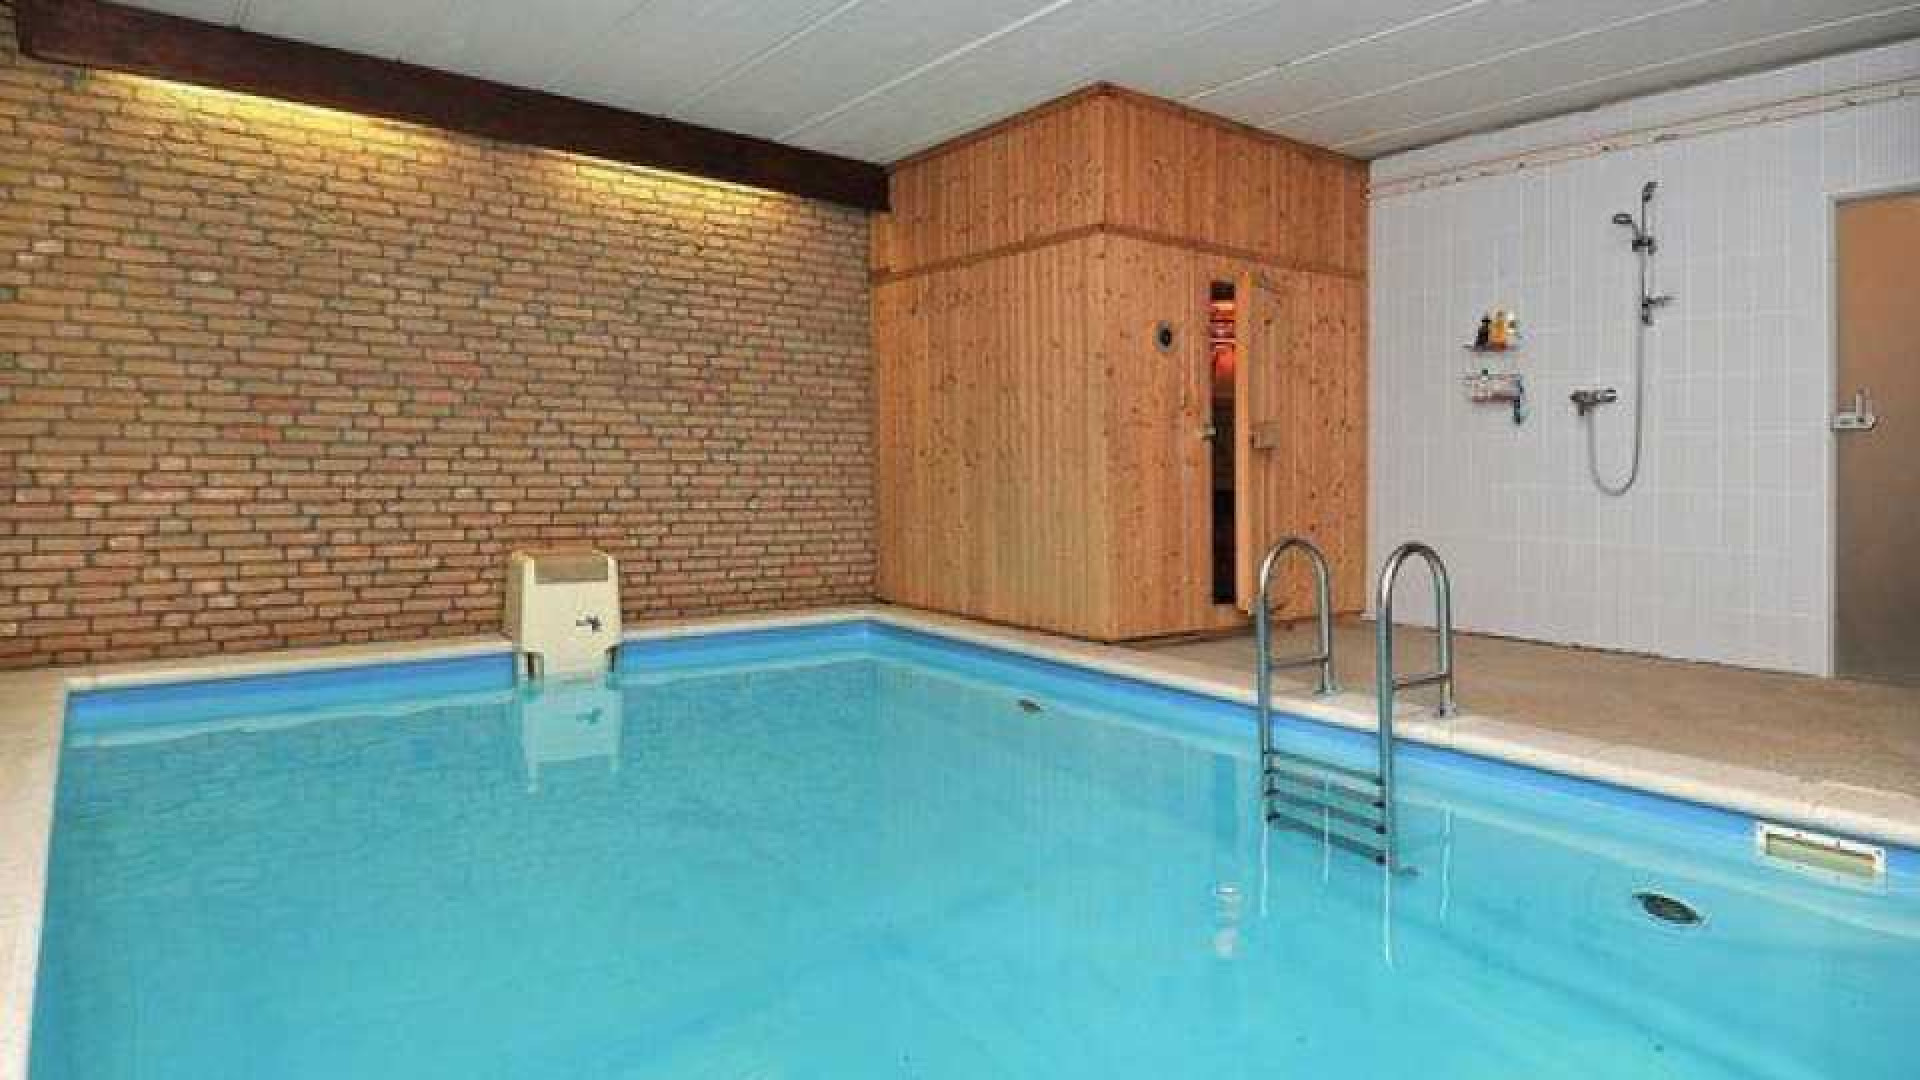 Binnenkijken in villa met zwembad en sauna van Rachel Hazes. Zie foto's